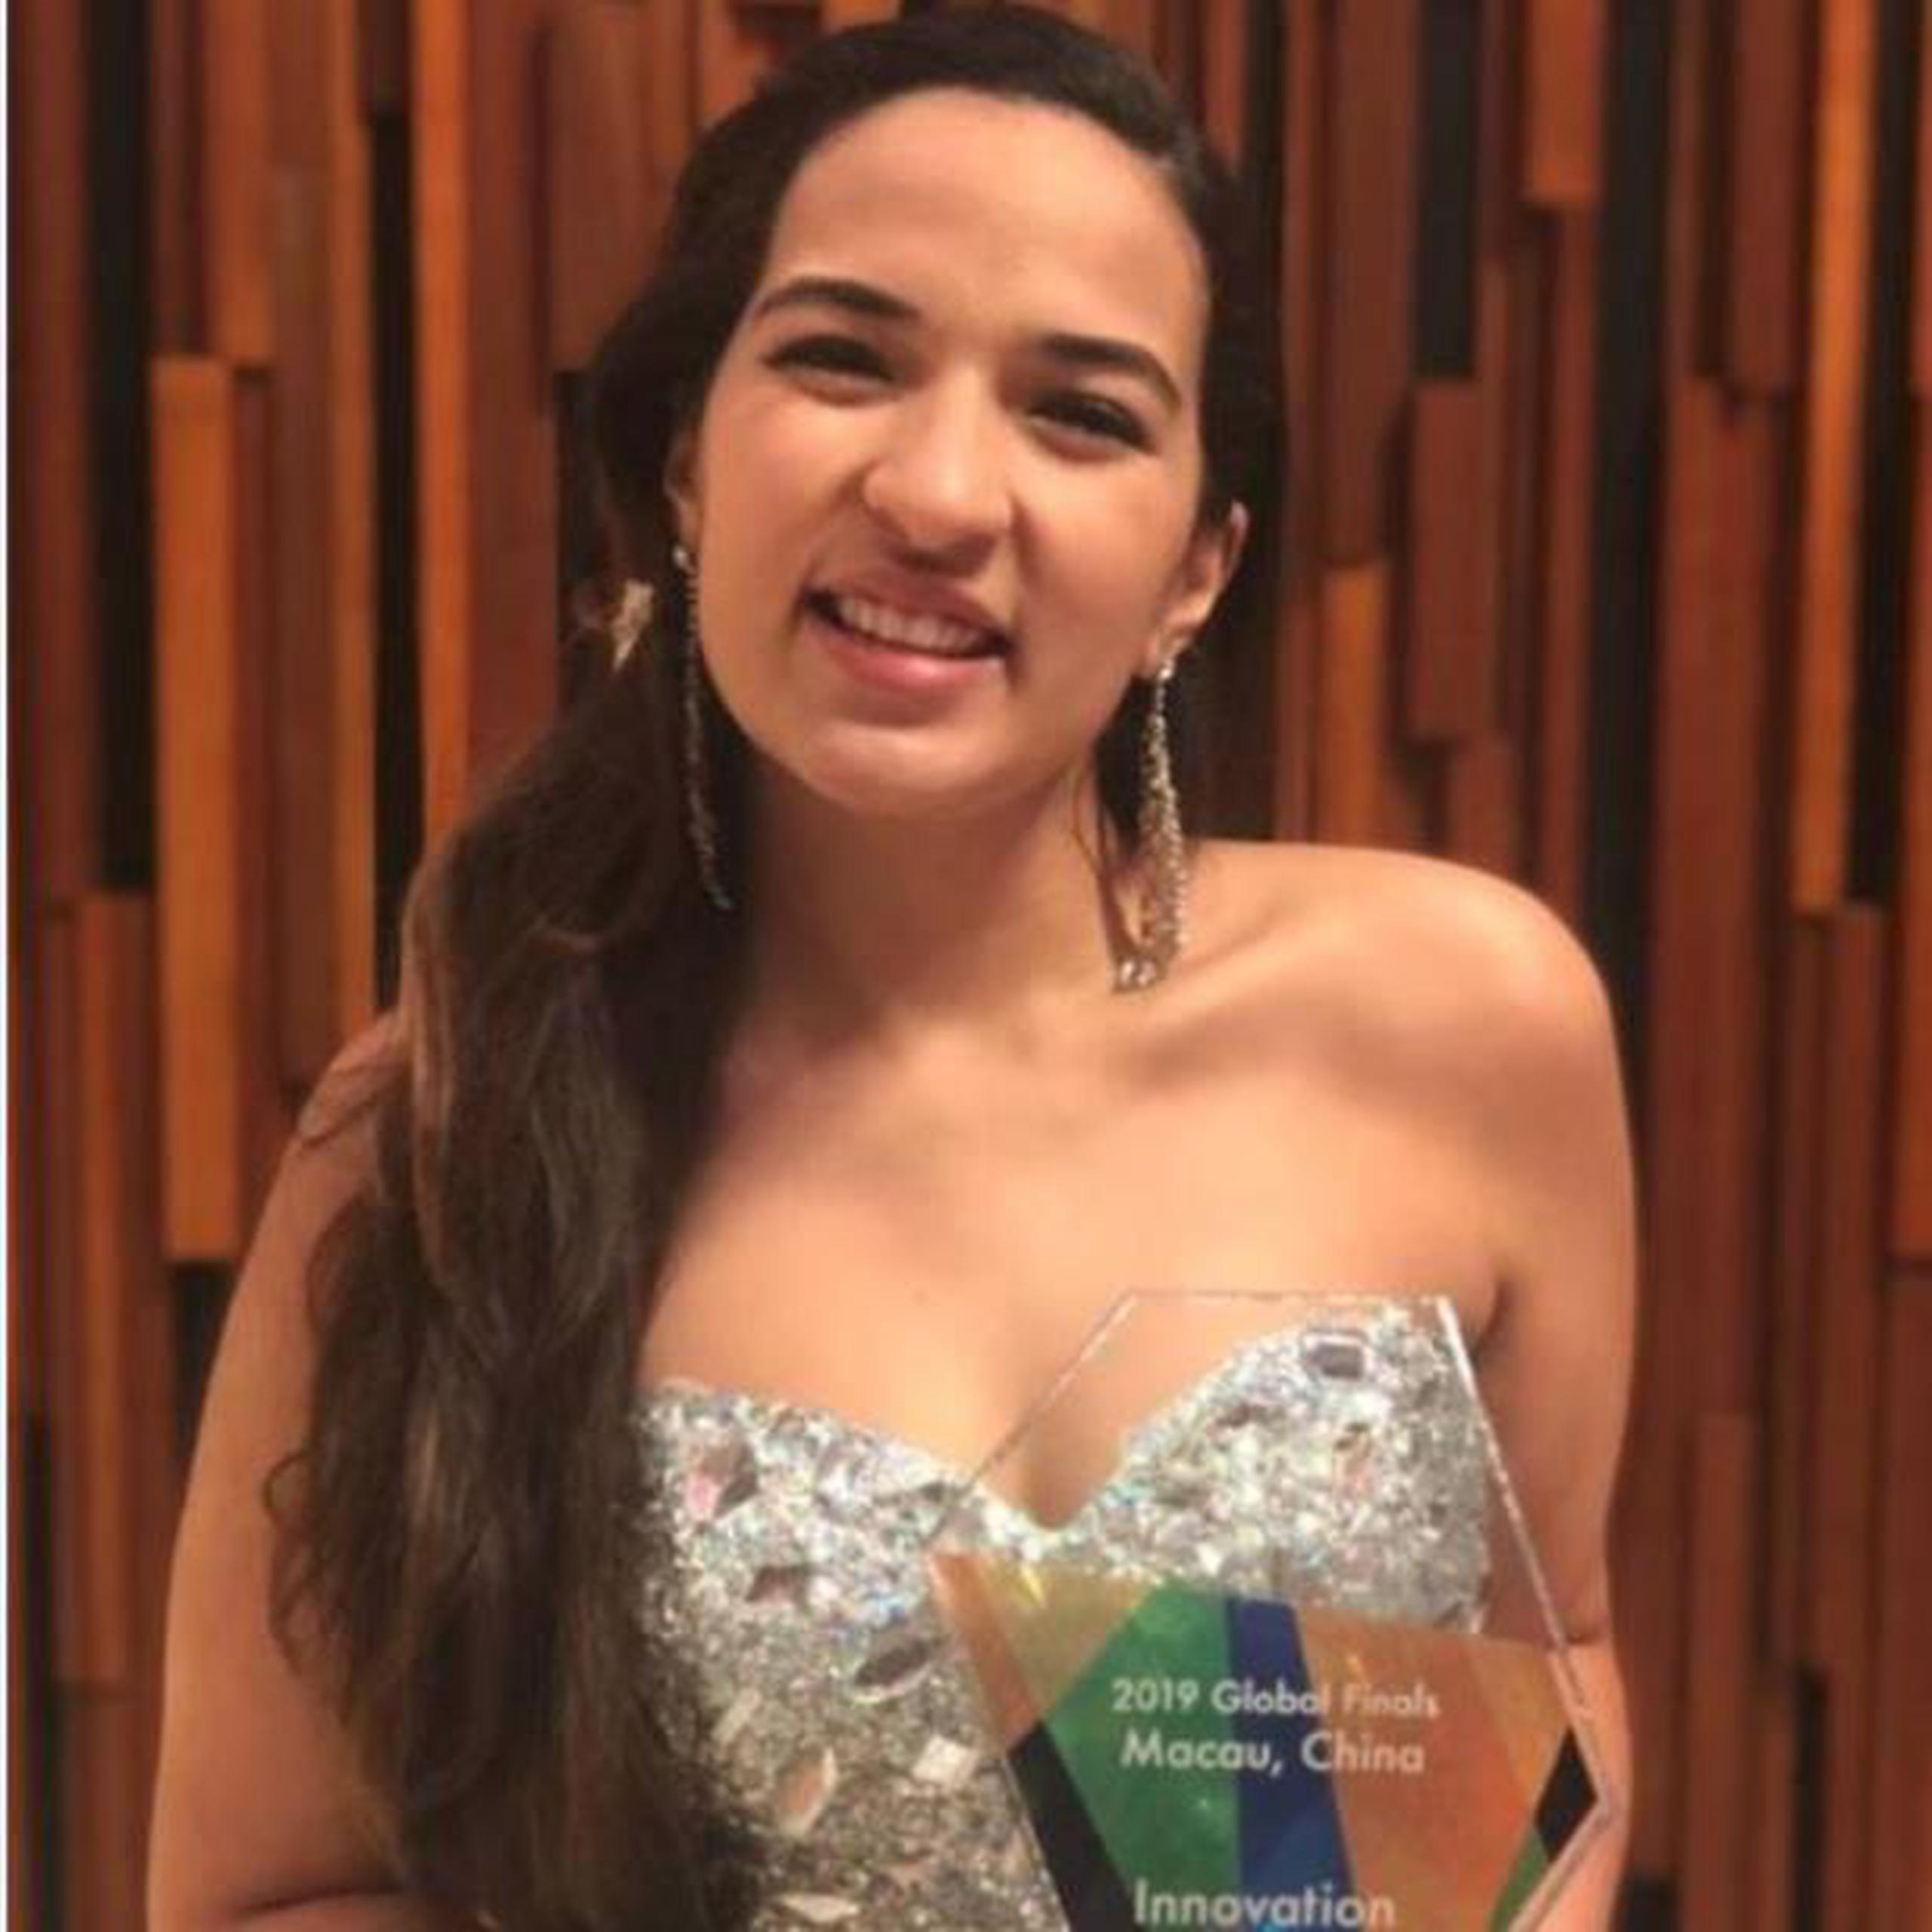 La joven boricua Alondra Toledo Febus ganó el premio Innovación en la competencia internacional Global Student Entrepreneur Awards, que se celebró en Macau, China. (Suministrada)